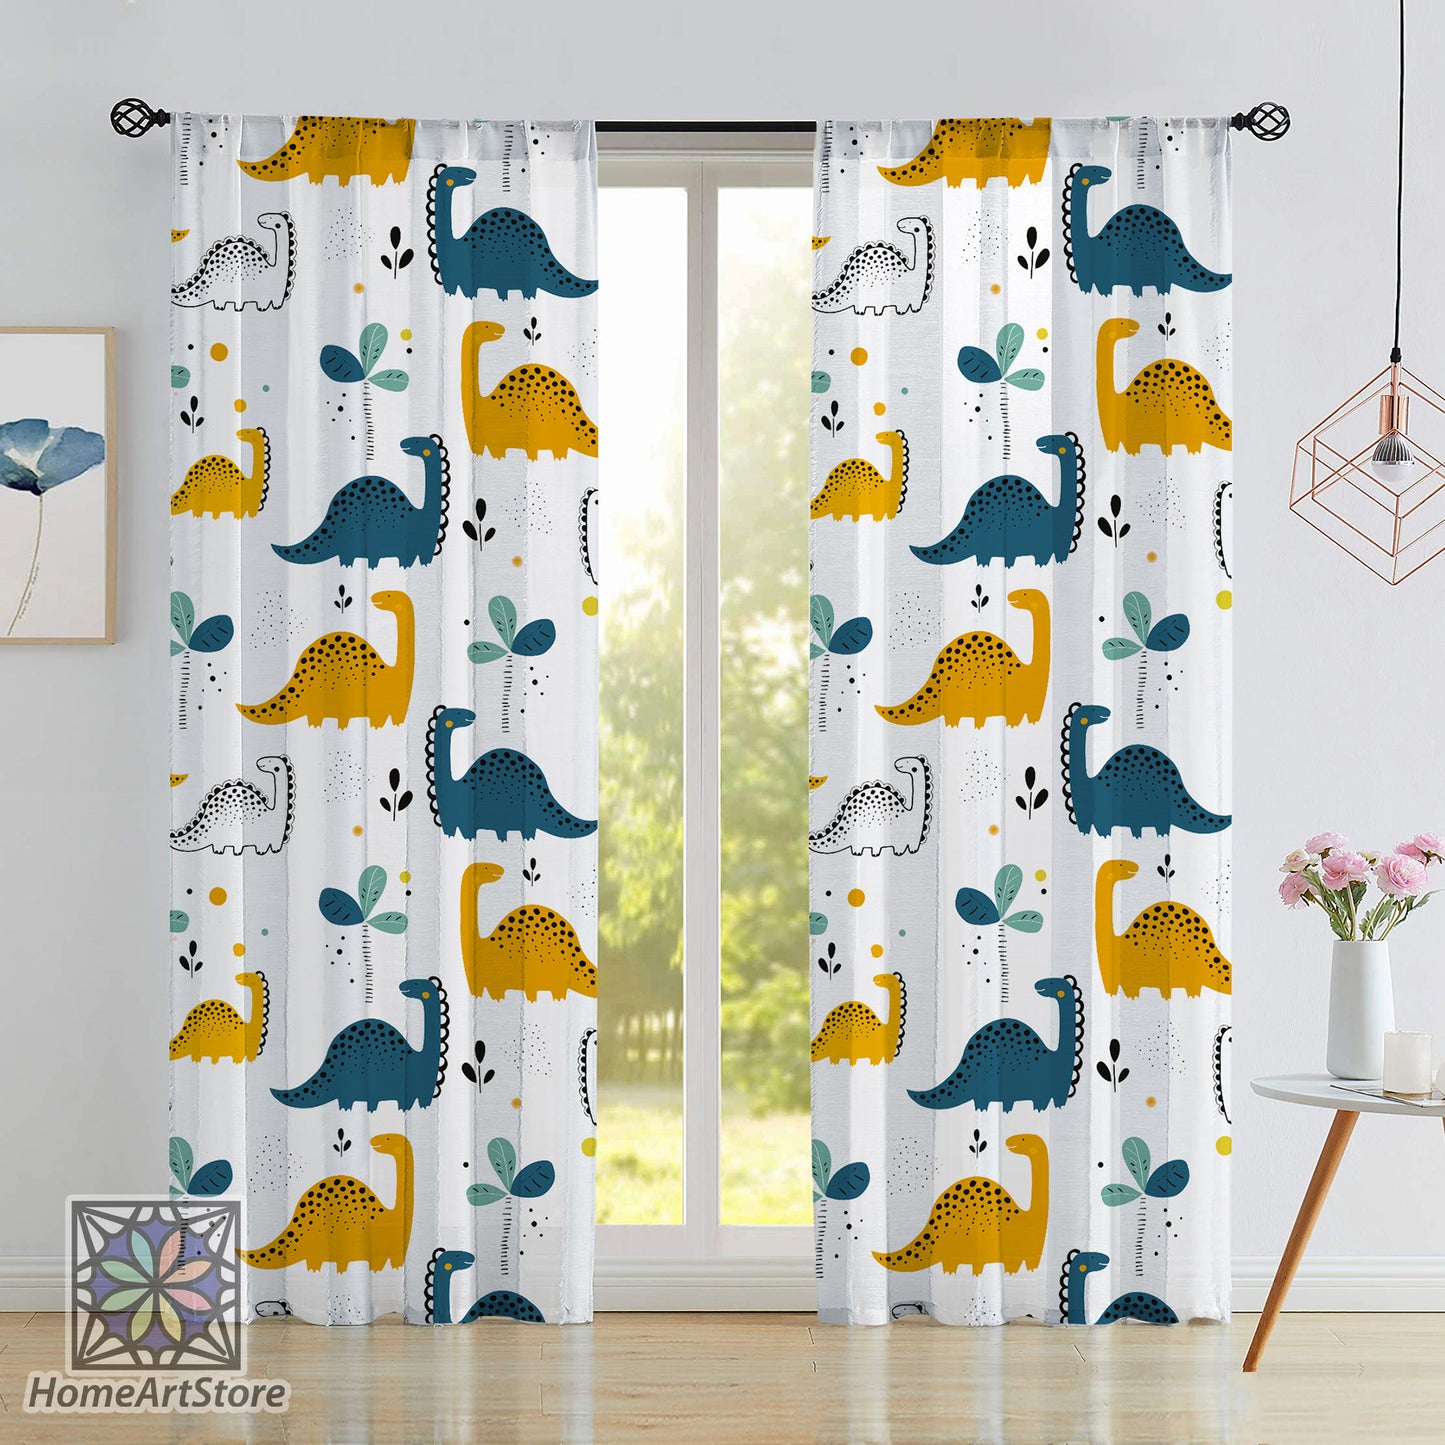 Dinosaurs Pattern Curtain, Cute Baby Room Curtain, Nursery Curtain, Animal Themed Curtain, Baby Gift